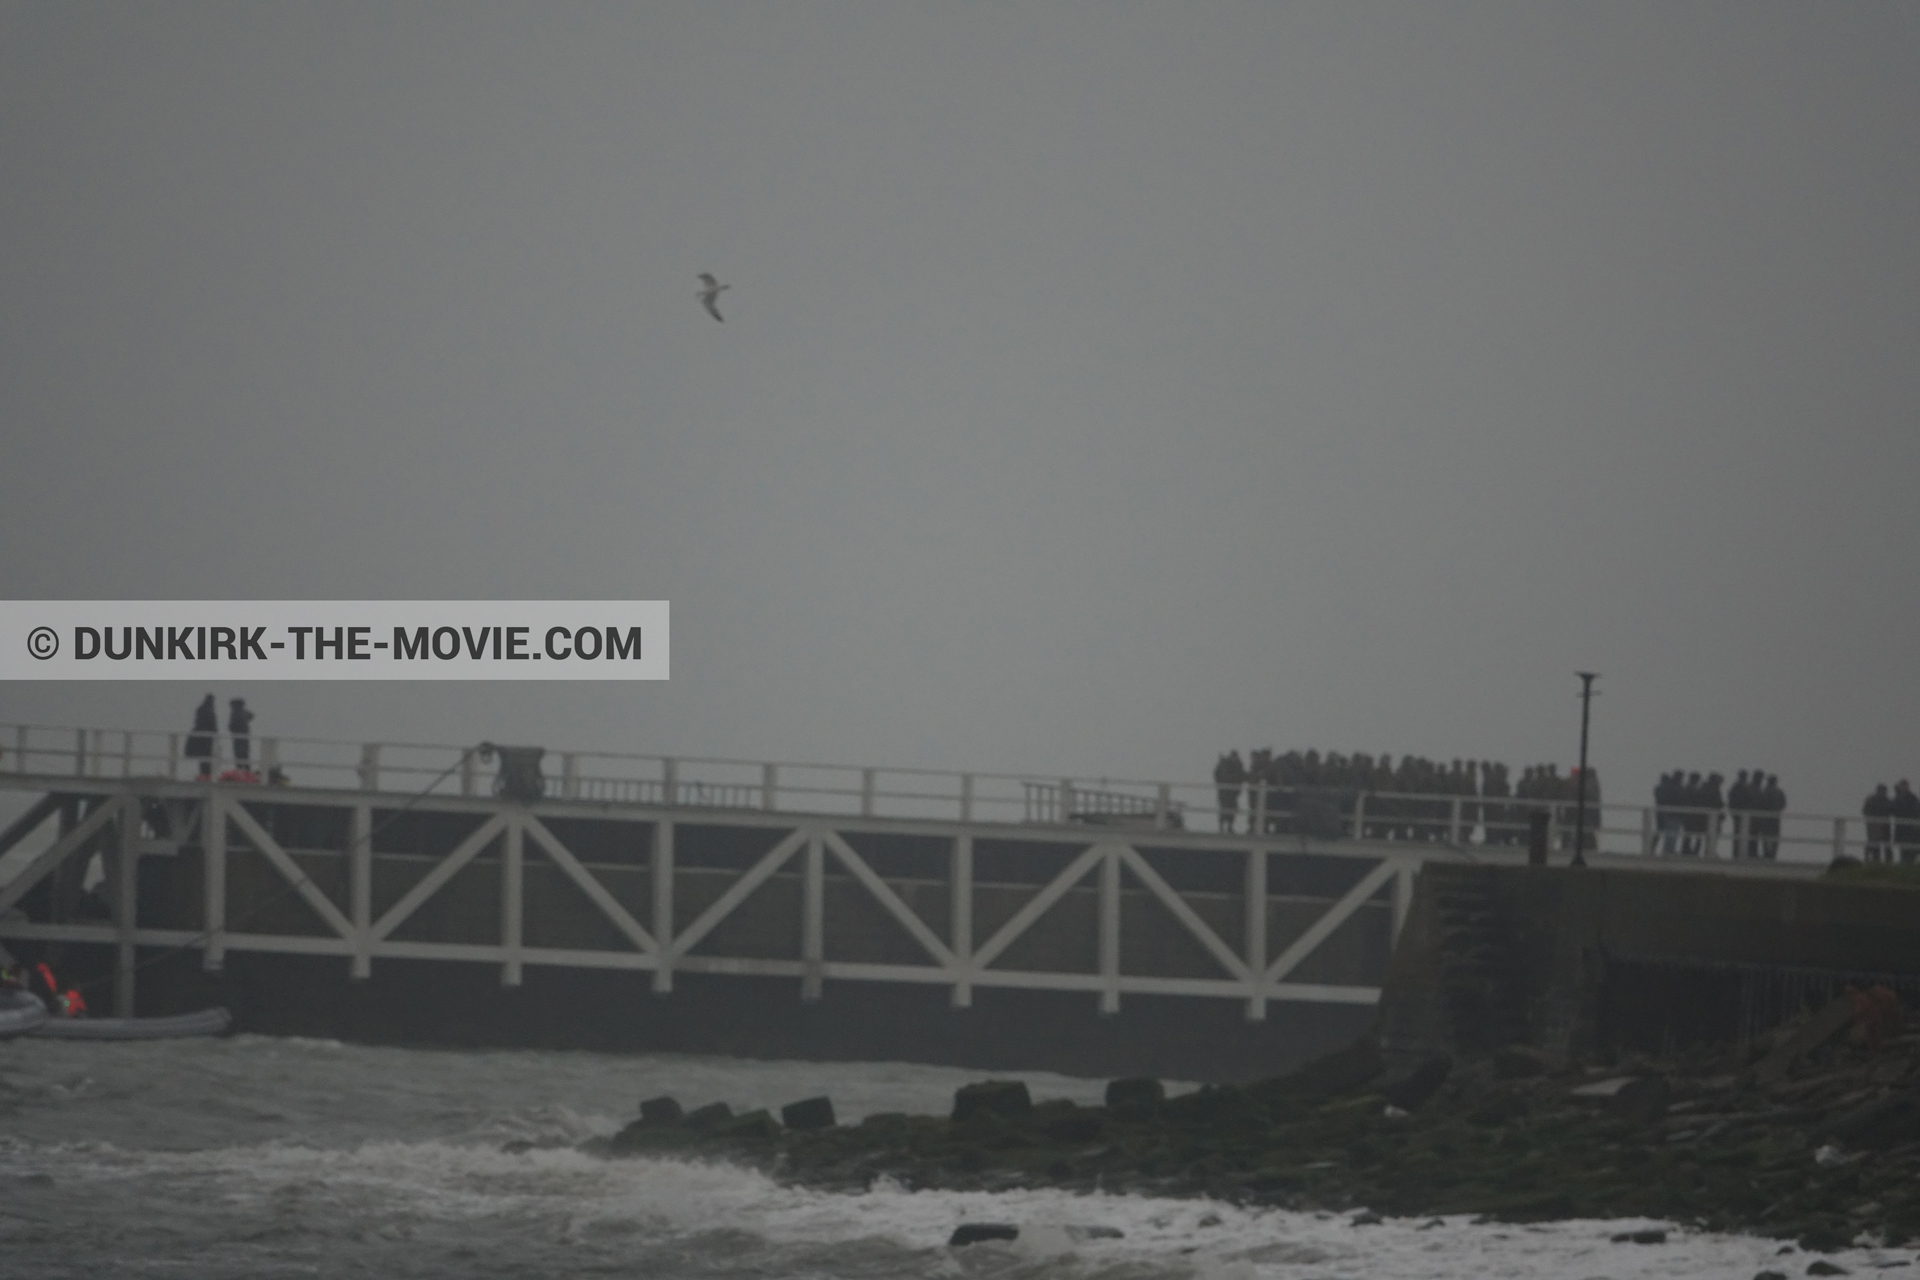 Fotos con cielo gris, extras, muelle del ESTE, mares agitados,  durante el rodaje de la película Dunkerque de Nolan